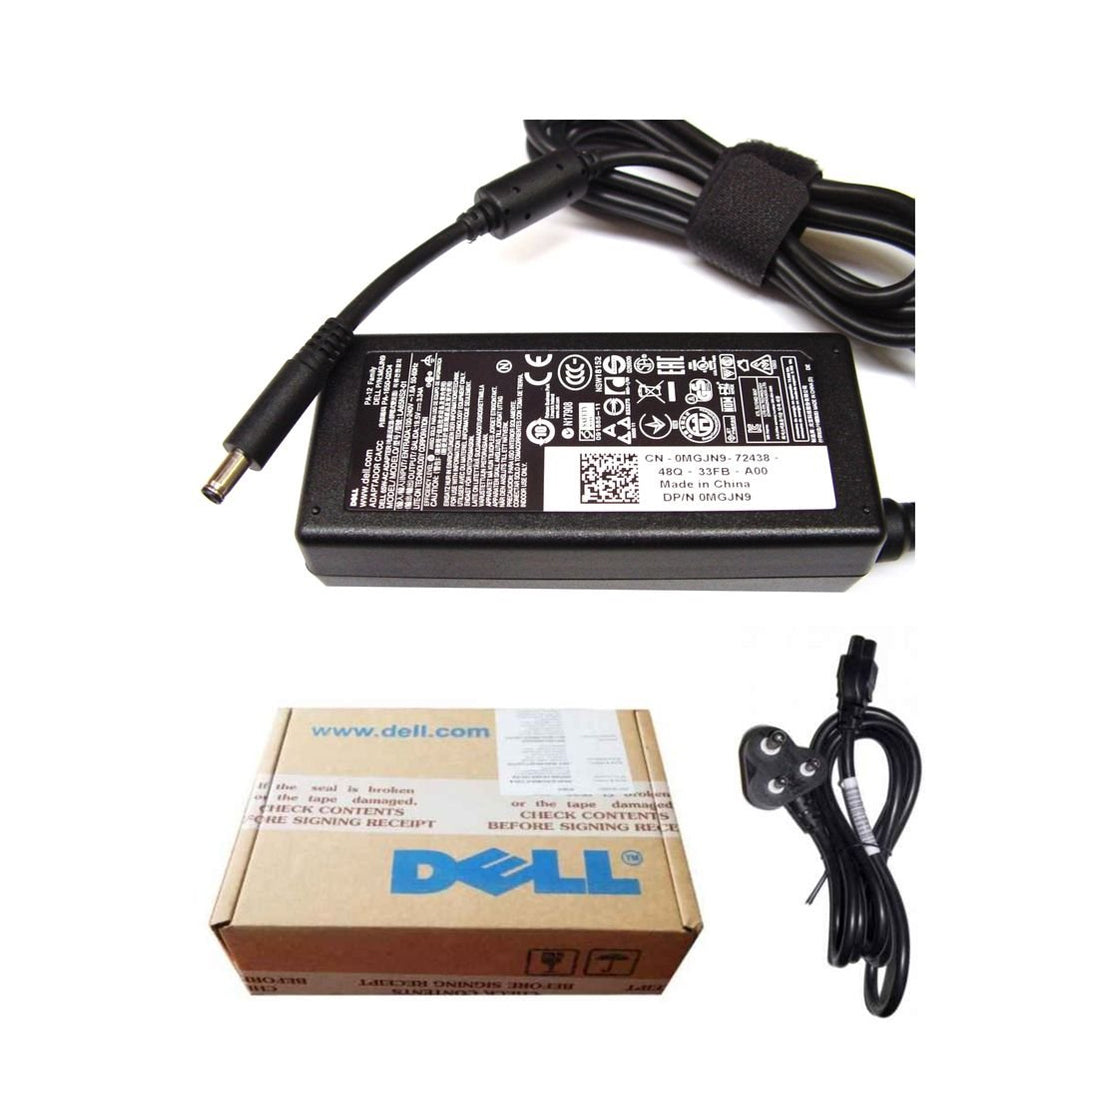 Dell ओरिजिनल 65W 19.5V 4.5mm पिन लैपटॉप चार्जर अडैप्टर Inspiron 11 3158 के लिए पावर कॉर्ड के साथ